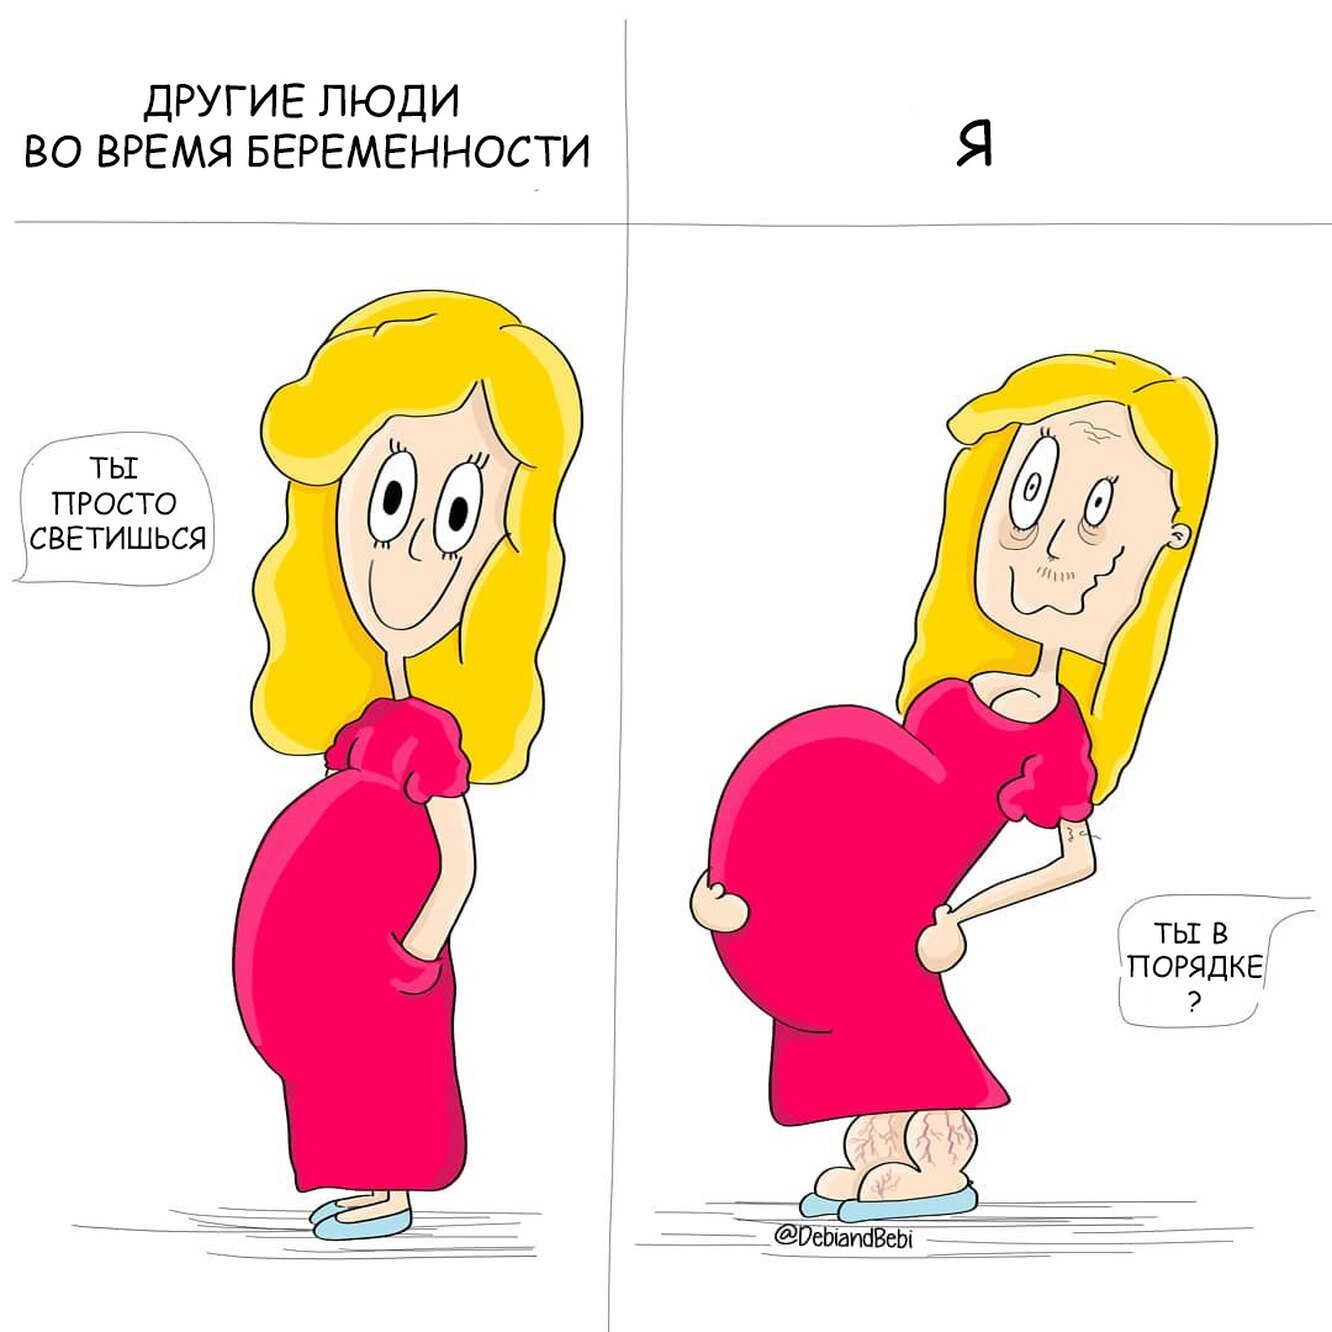 Рассказ про беременных. Прикольные про беременных. Мемы про беременность. Смешные рисунки беременных. Смешное про беременность.